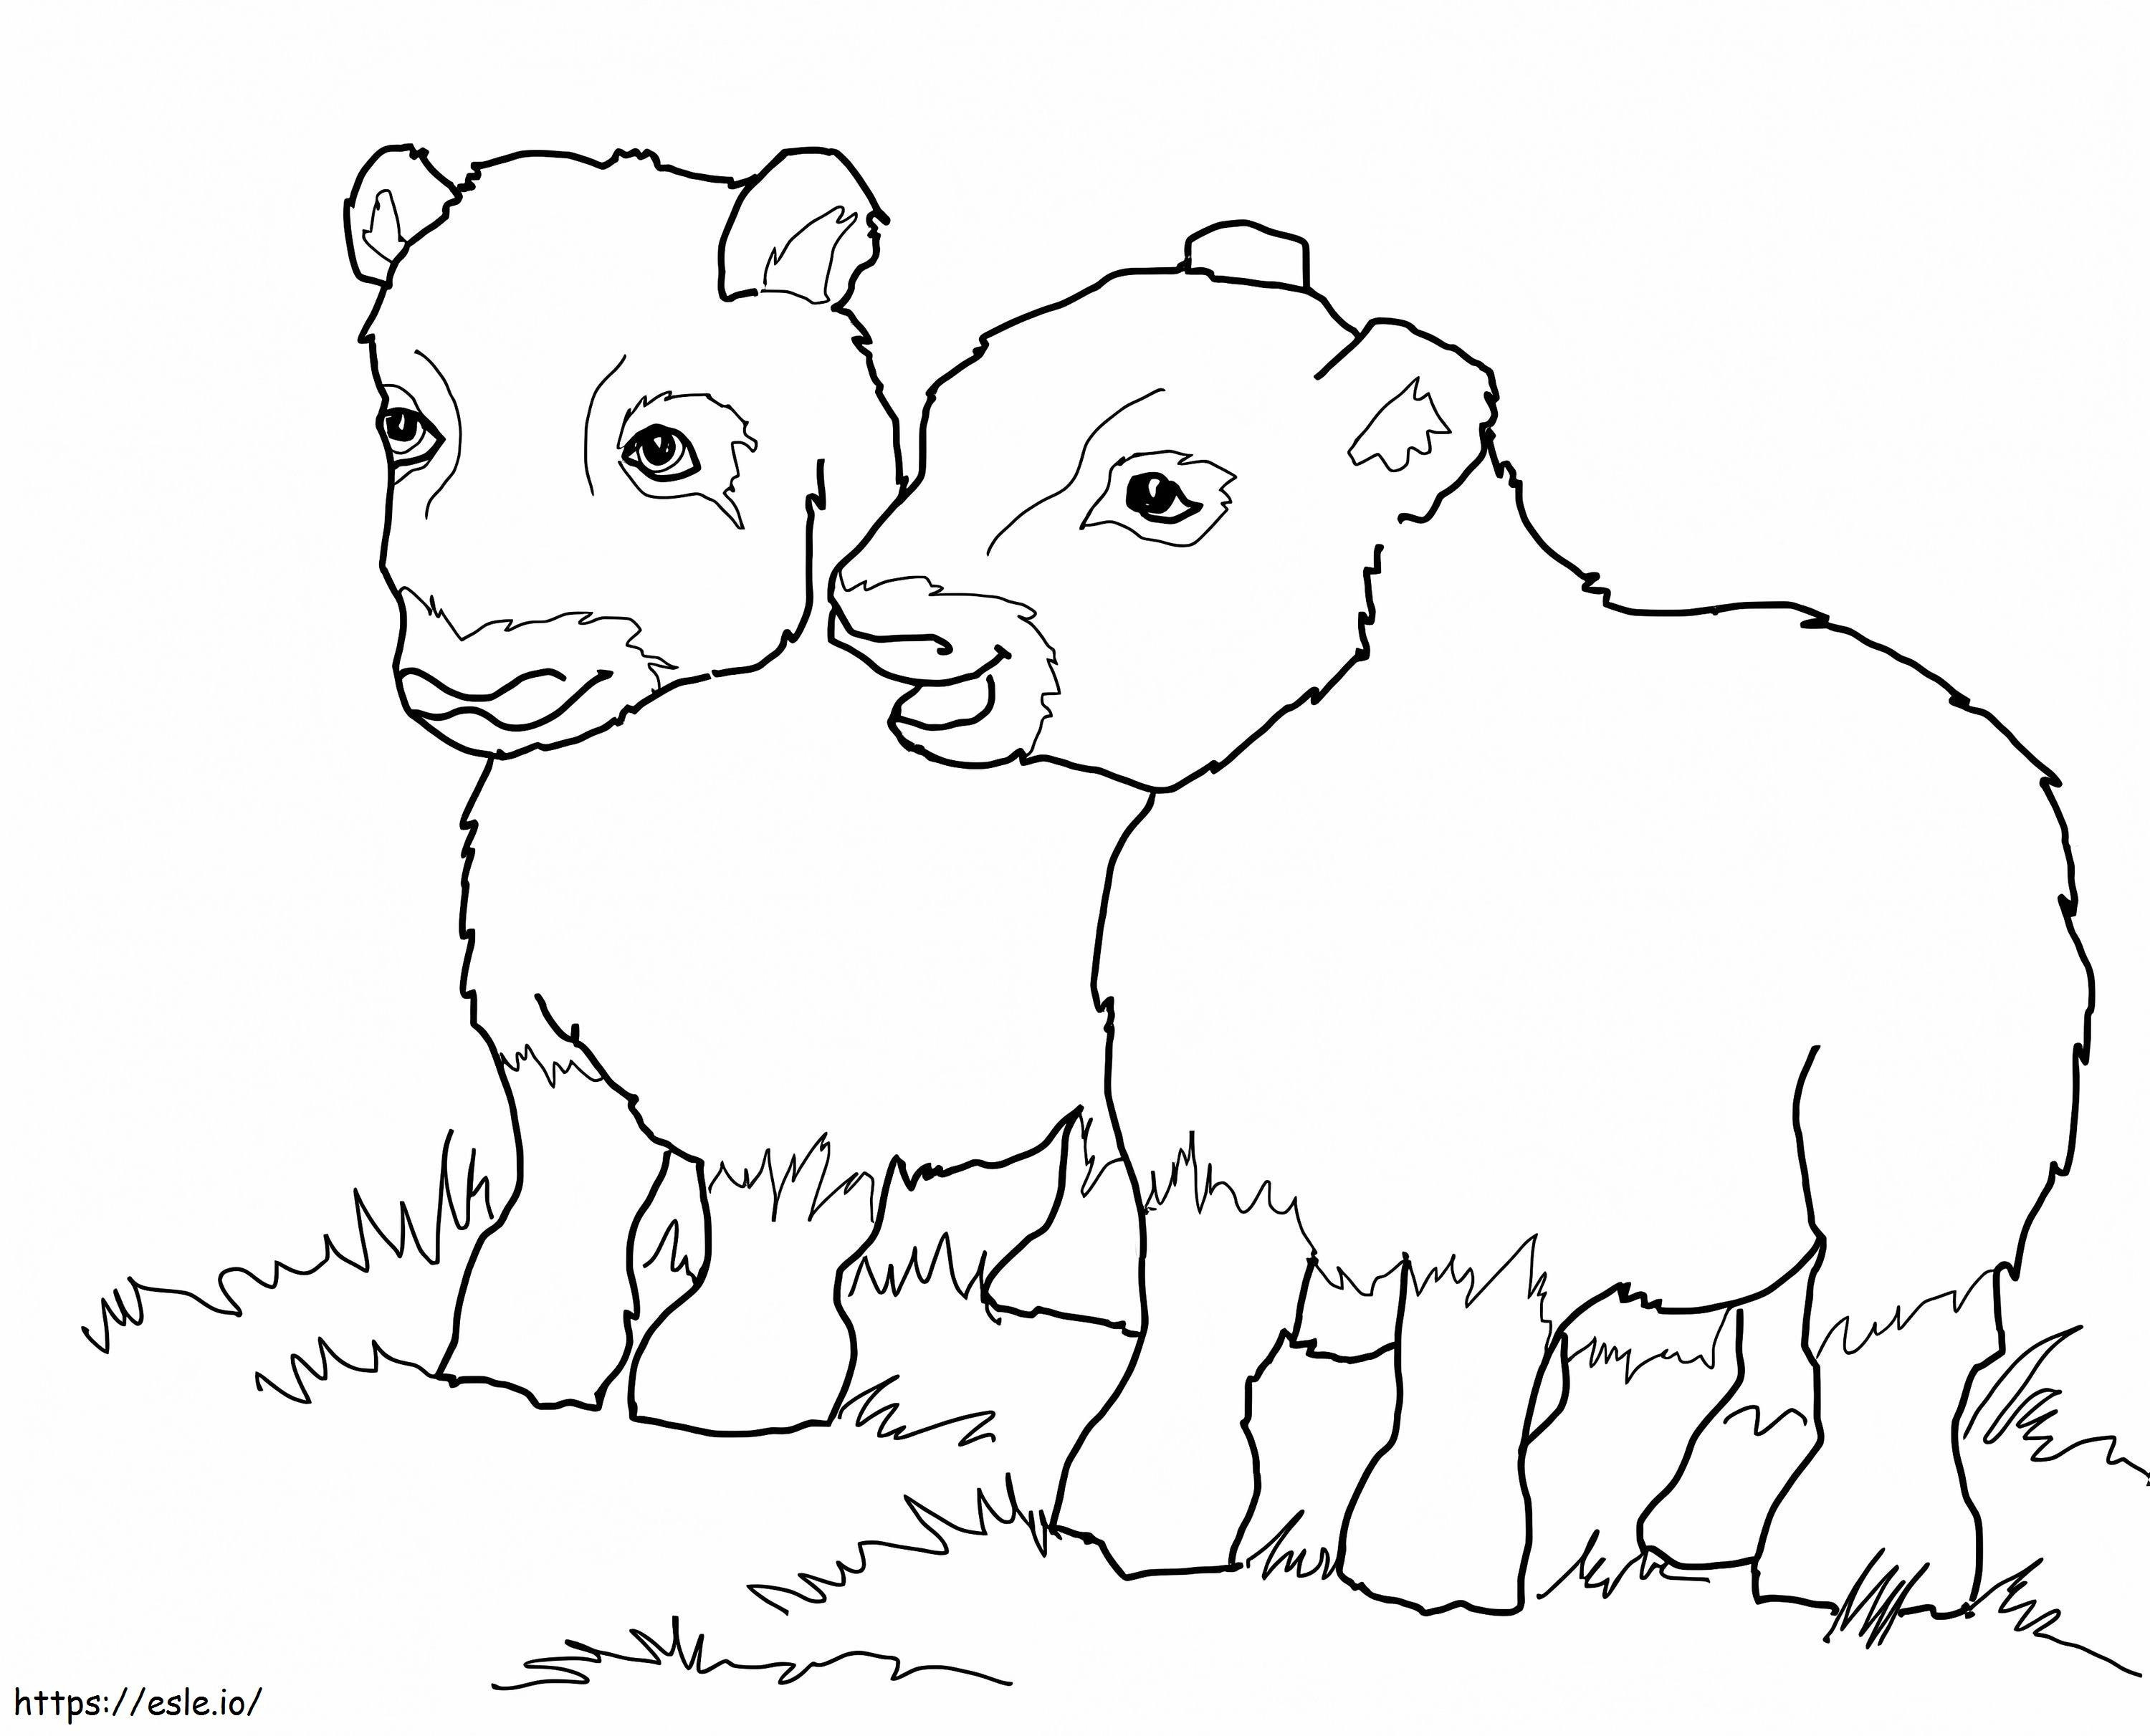 Bebês de boi almiscarado para colorir